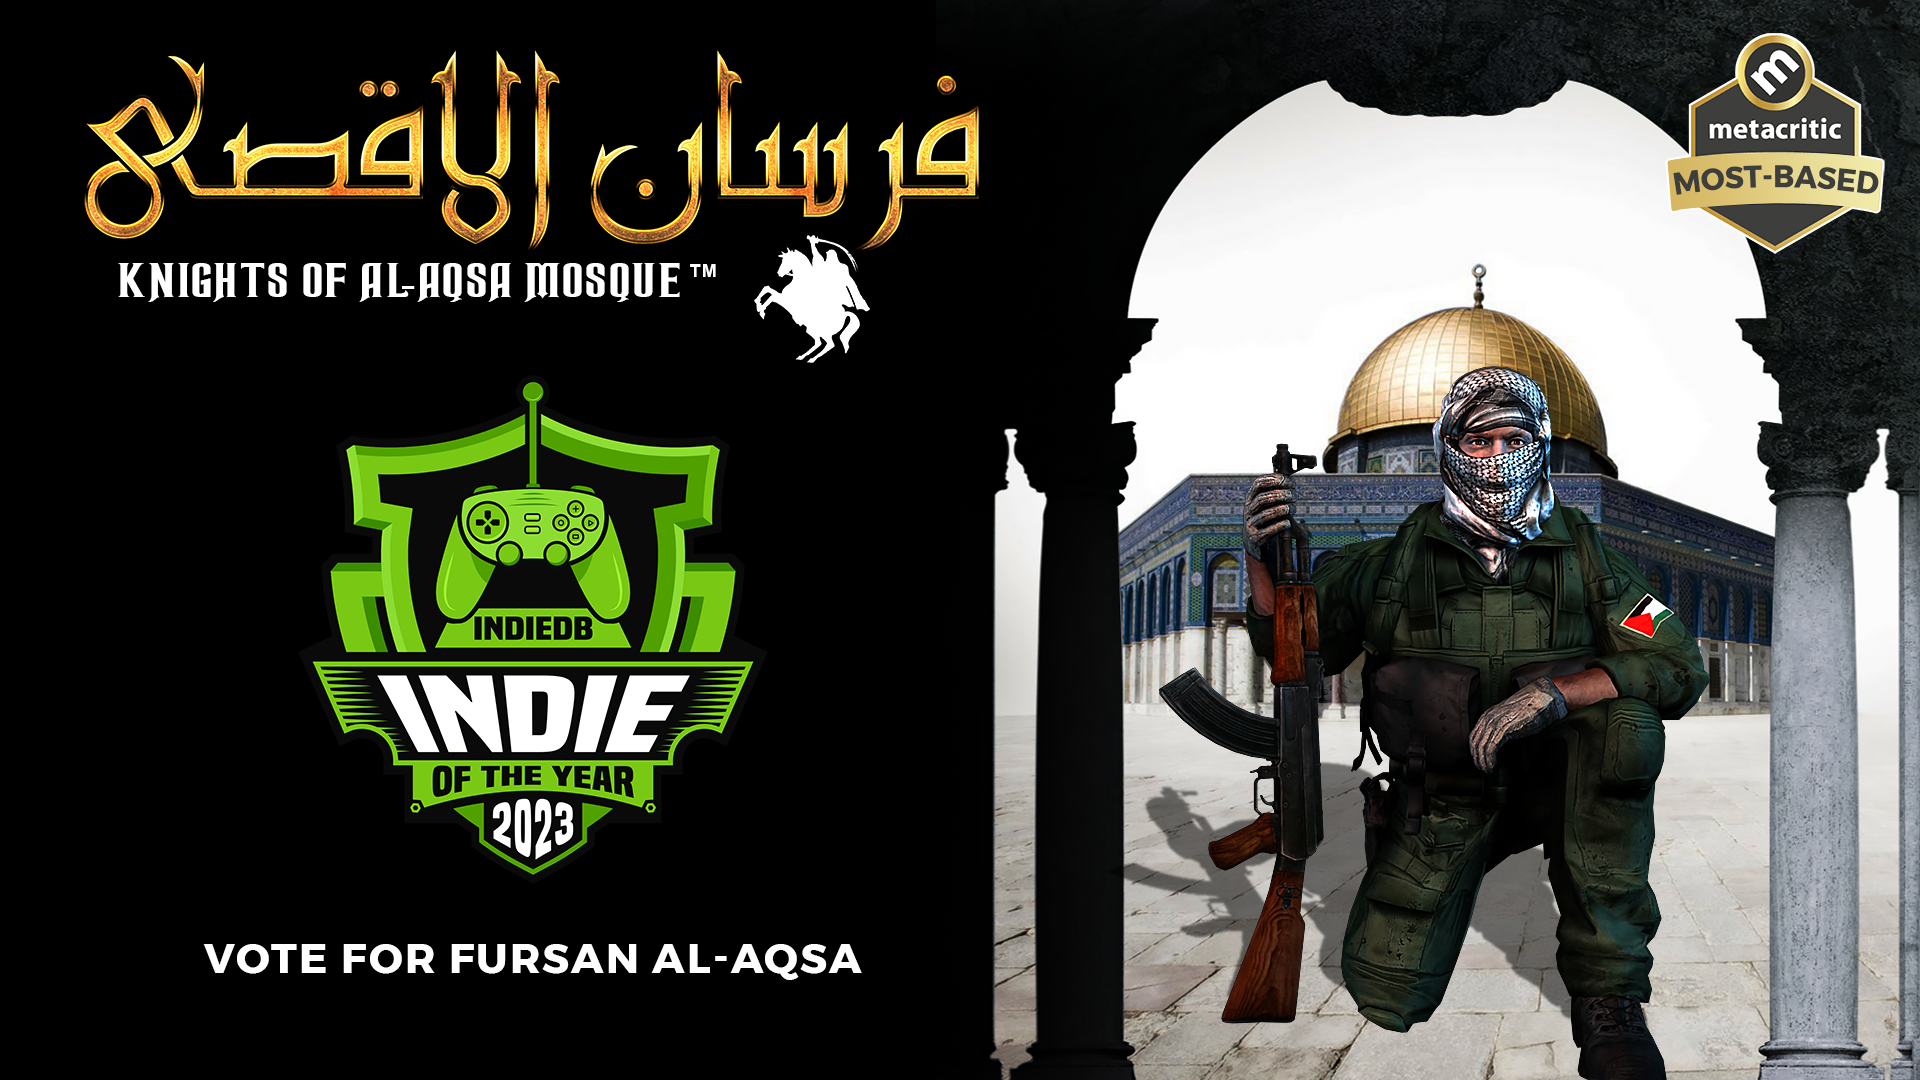 Fursan al-Aqsa: Knights of al-Aqsa Mosque PS3 PKG by Nidal Nijm